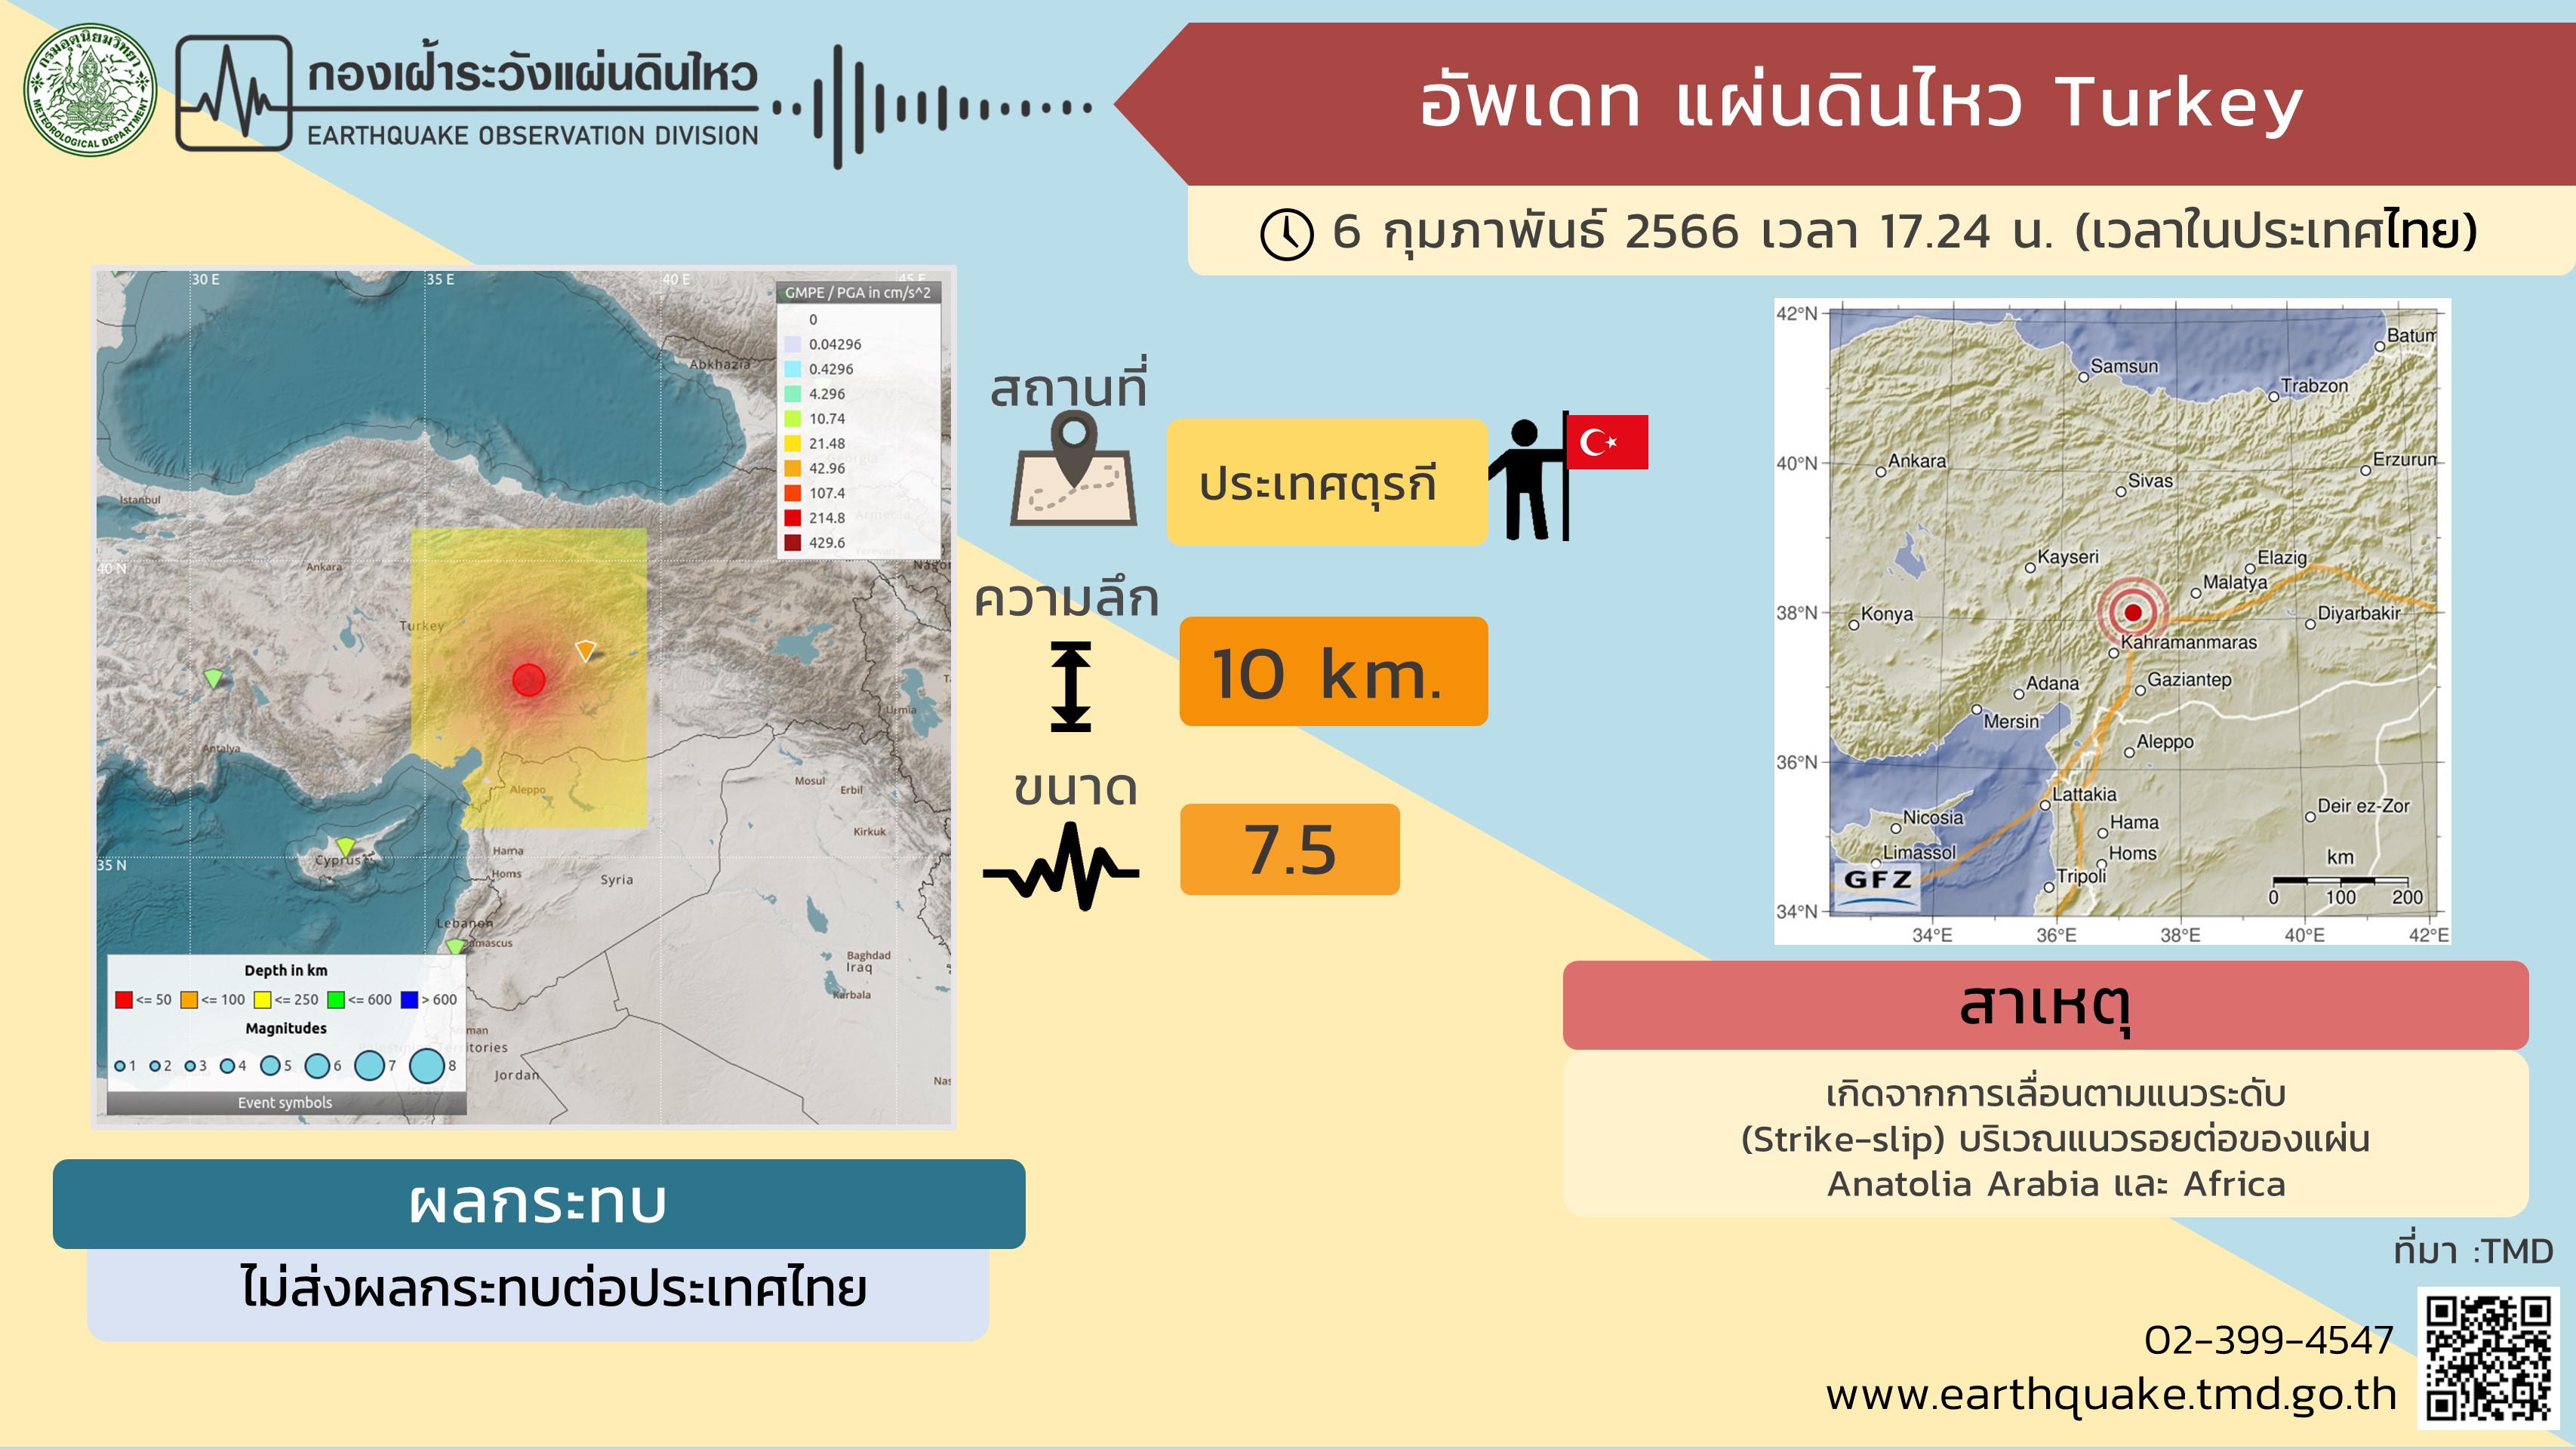 แผ่นดินไหว ประเทศตุรกี ไม่มีผลกระทบต่อประเทศไทย